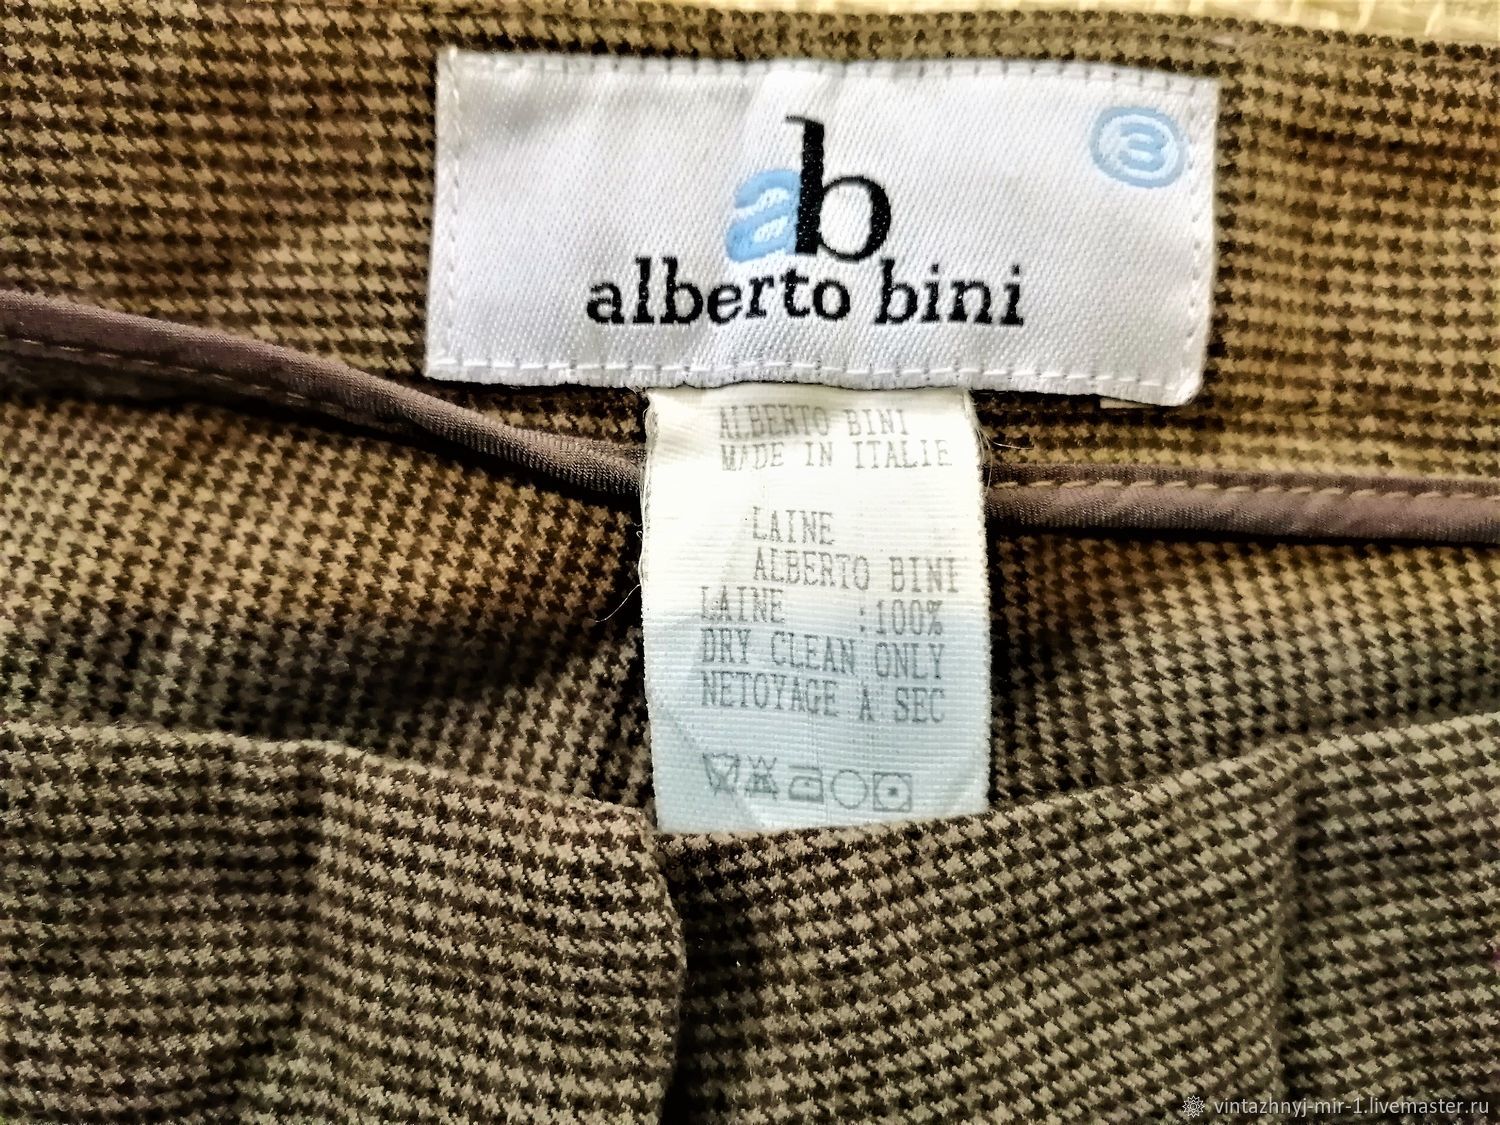 Винтаж: Одежда винтажная: брюки из шерсти alberto bini, Италия винтернет-магазине Ярмарка Мастеров по цене 2057 ₽ – PGUEQRU